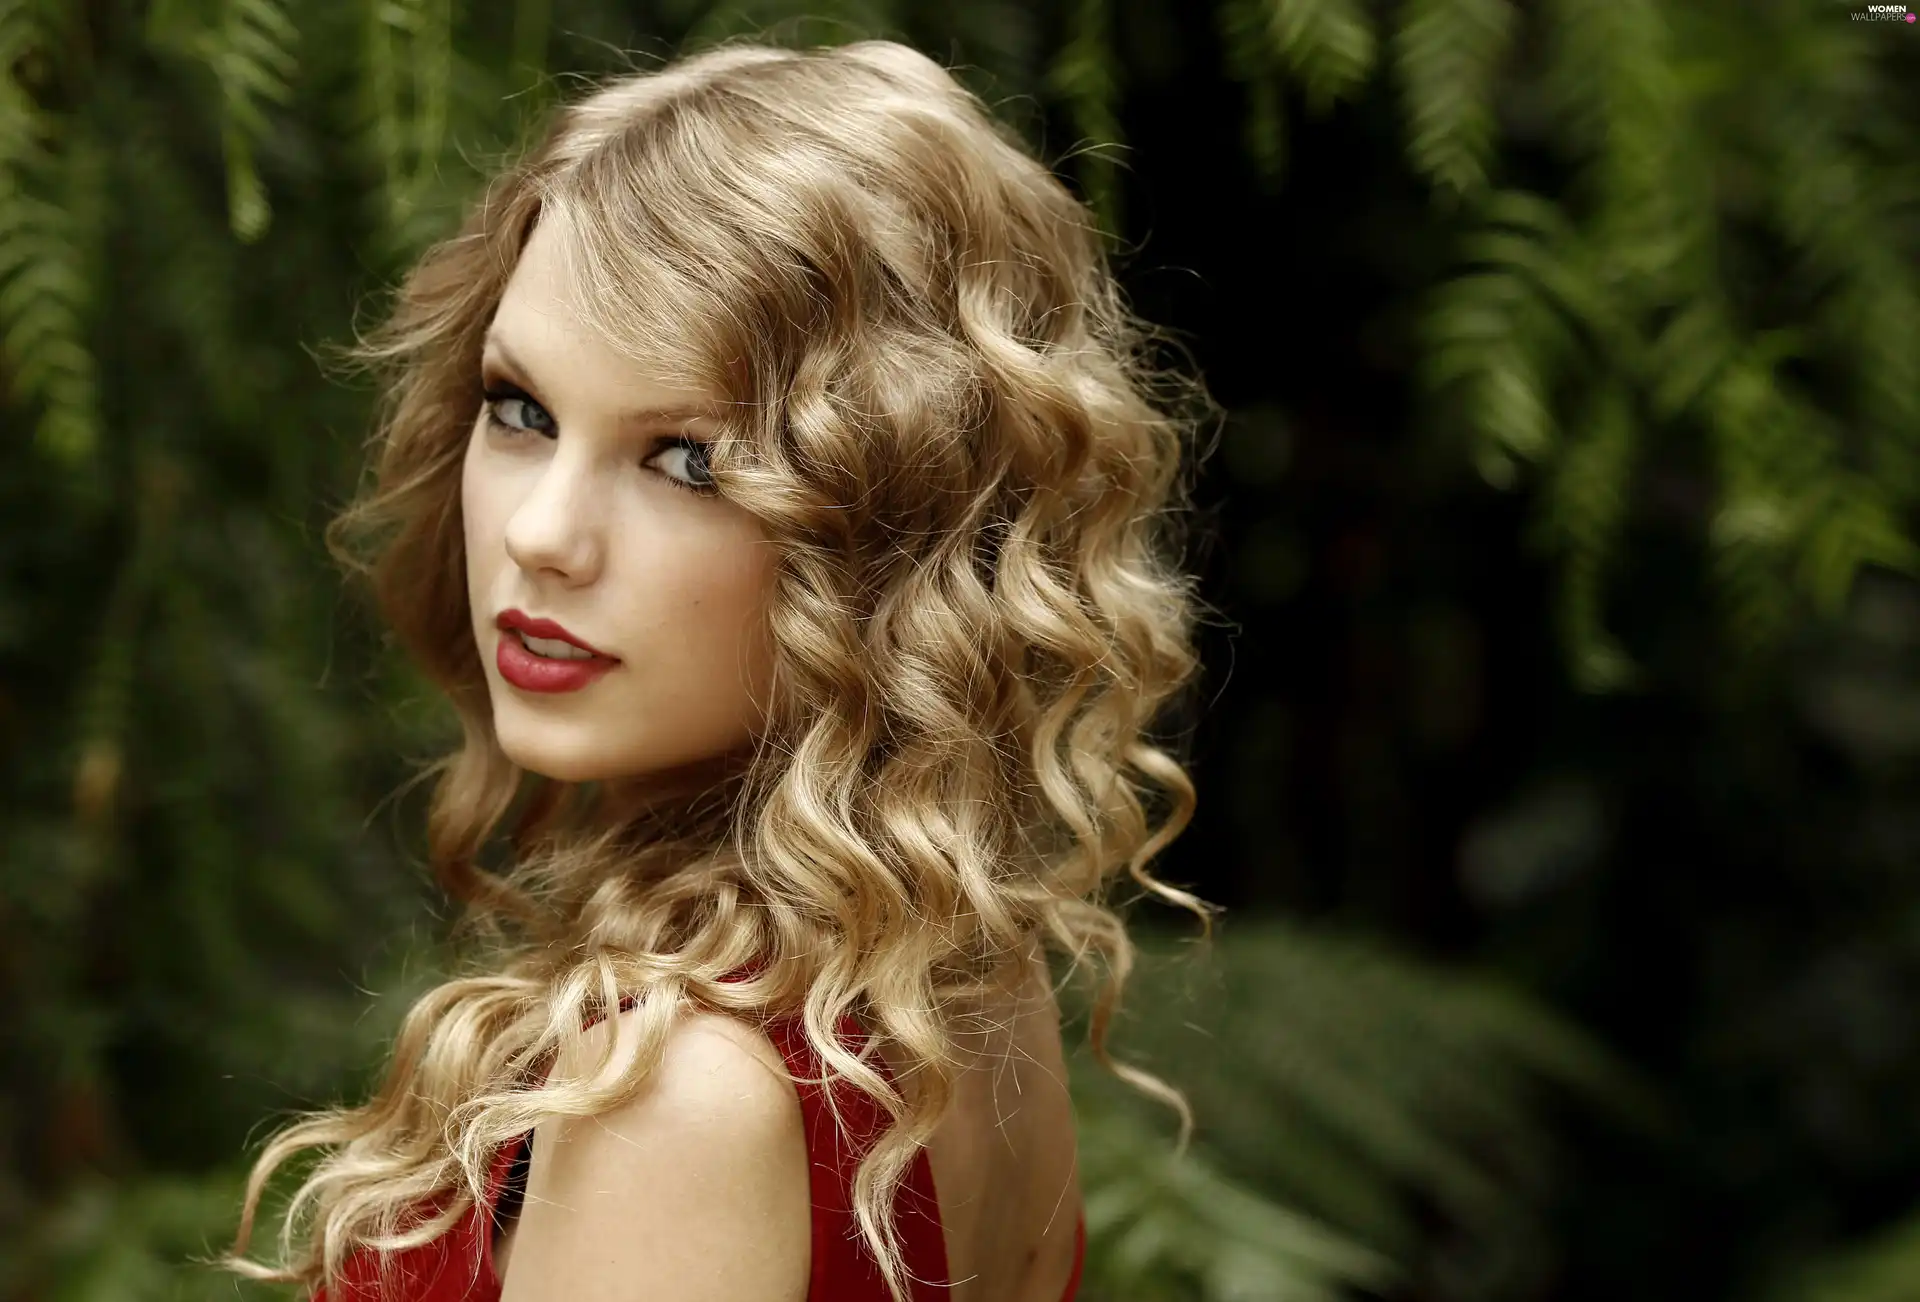 Beauty, Taylor Swift